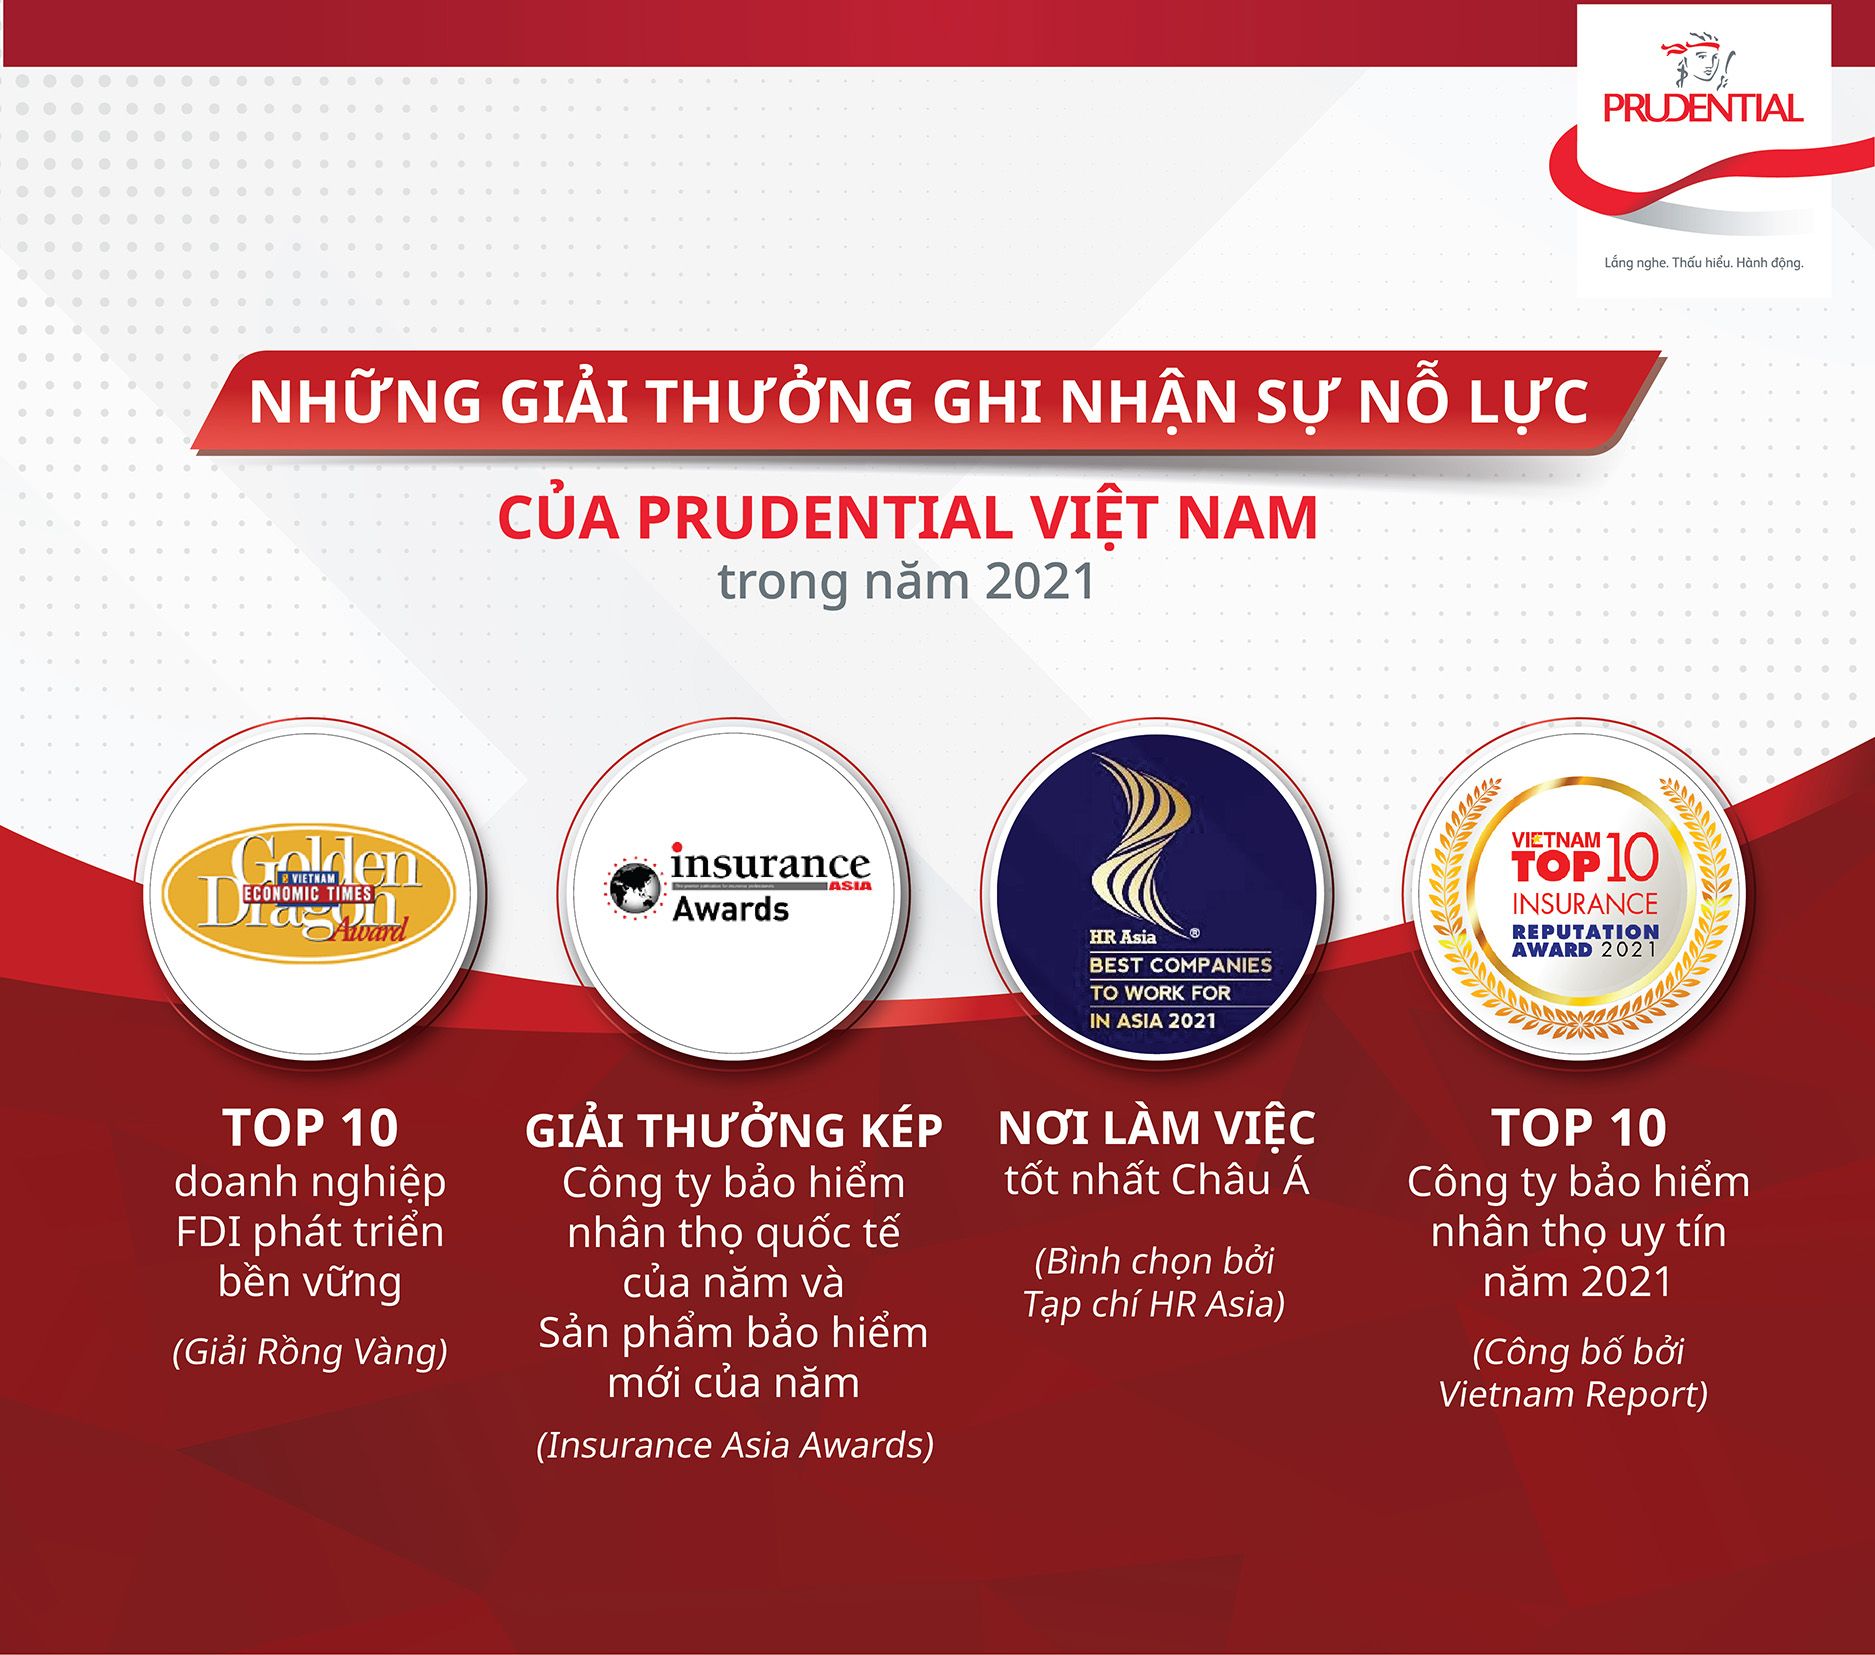 Prudential Việt Nam ra mắt sản phẩm bảo hiểm PRUThiết thực